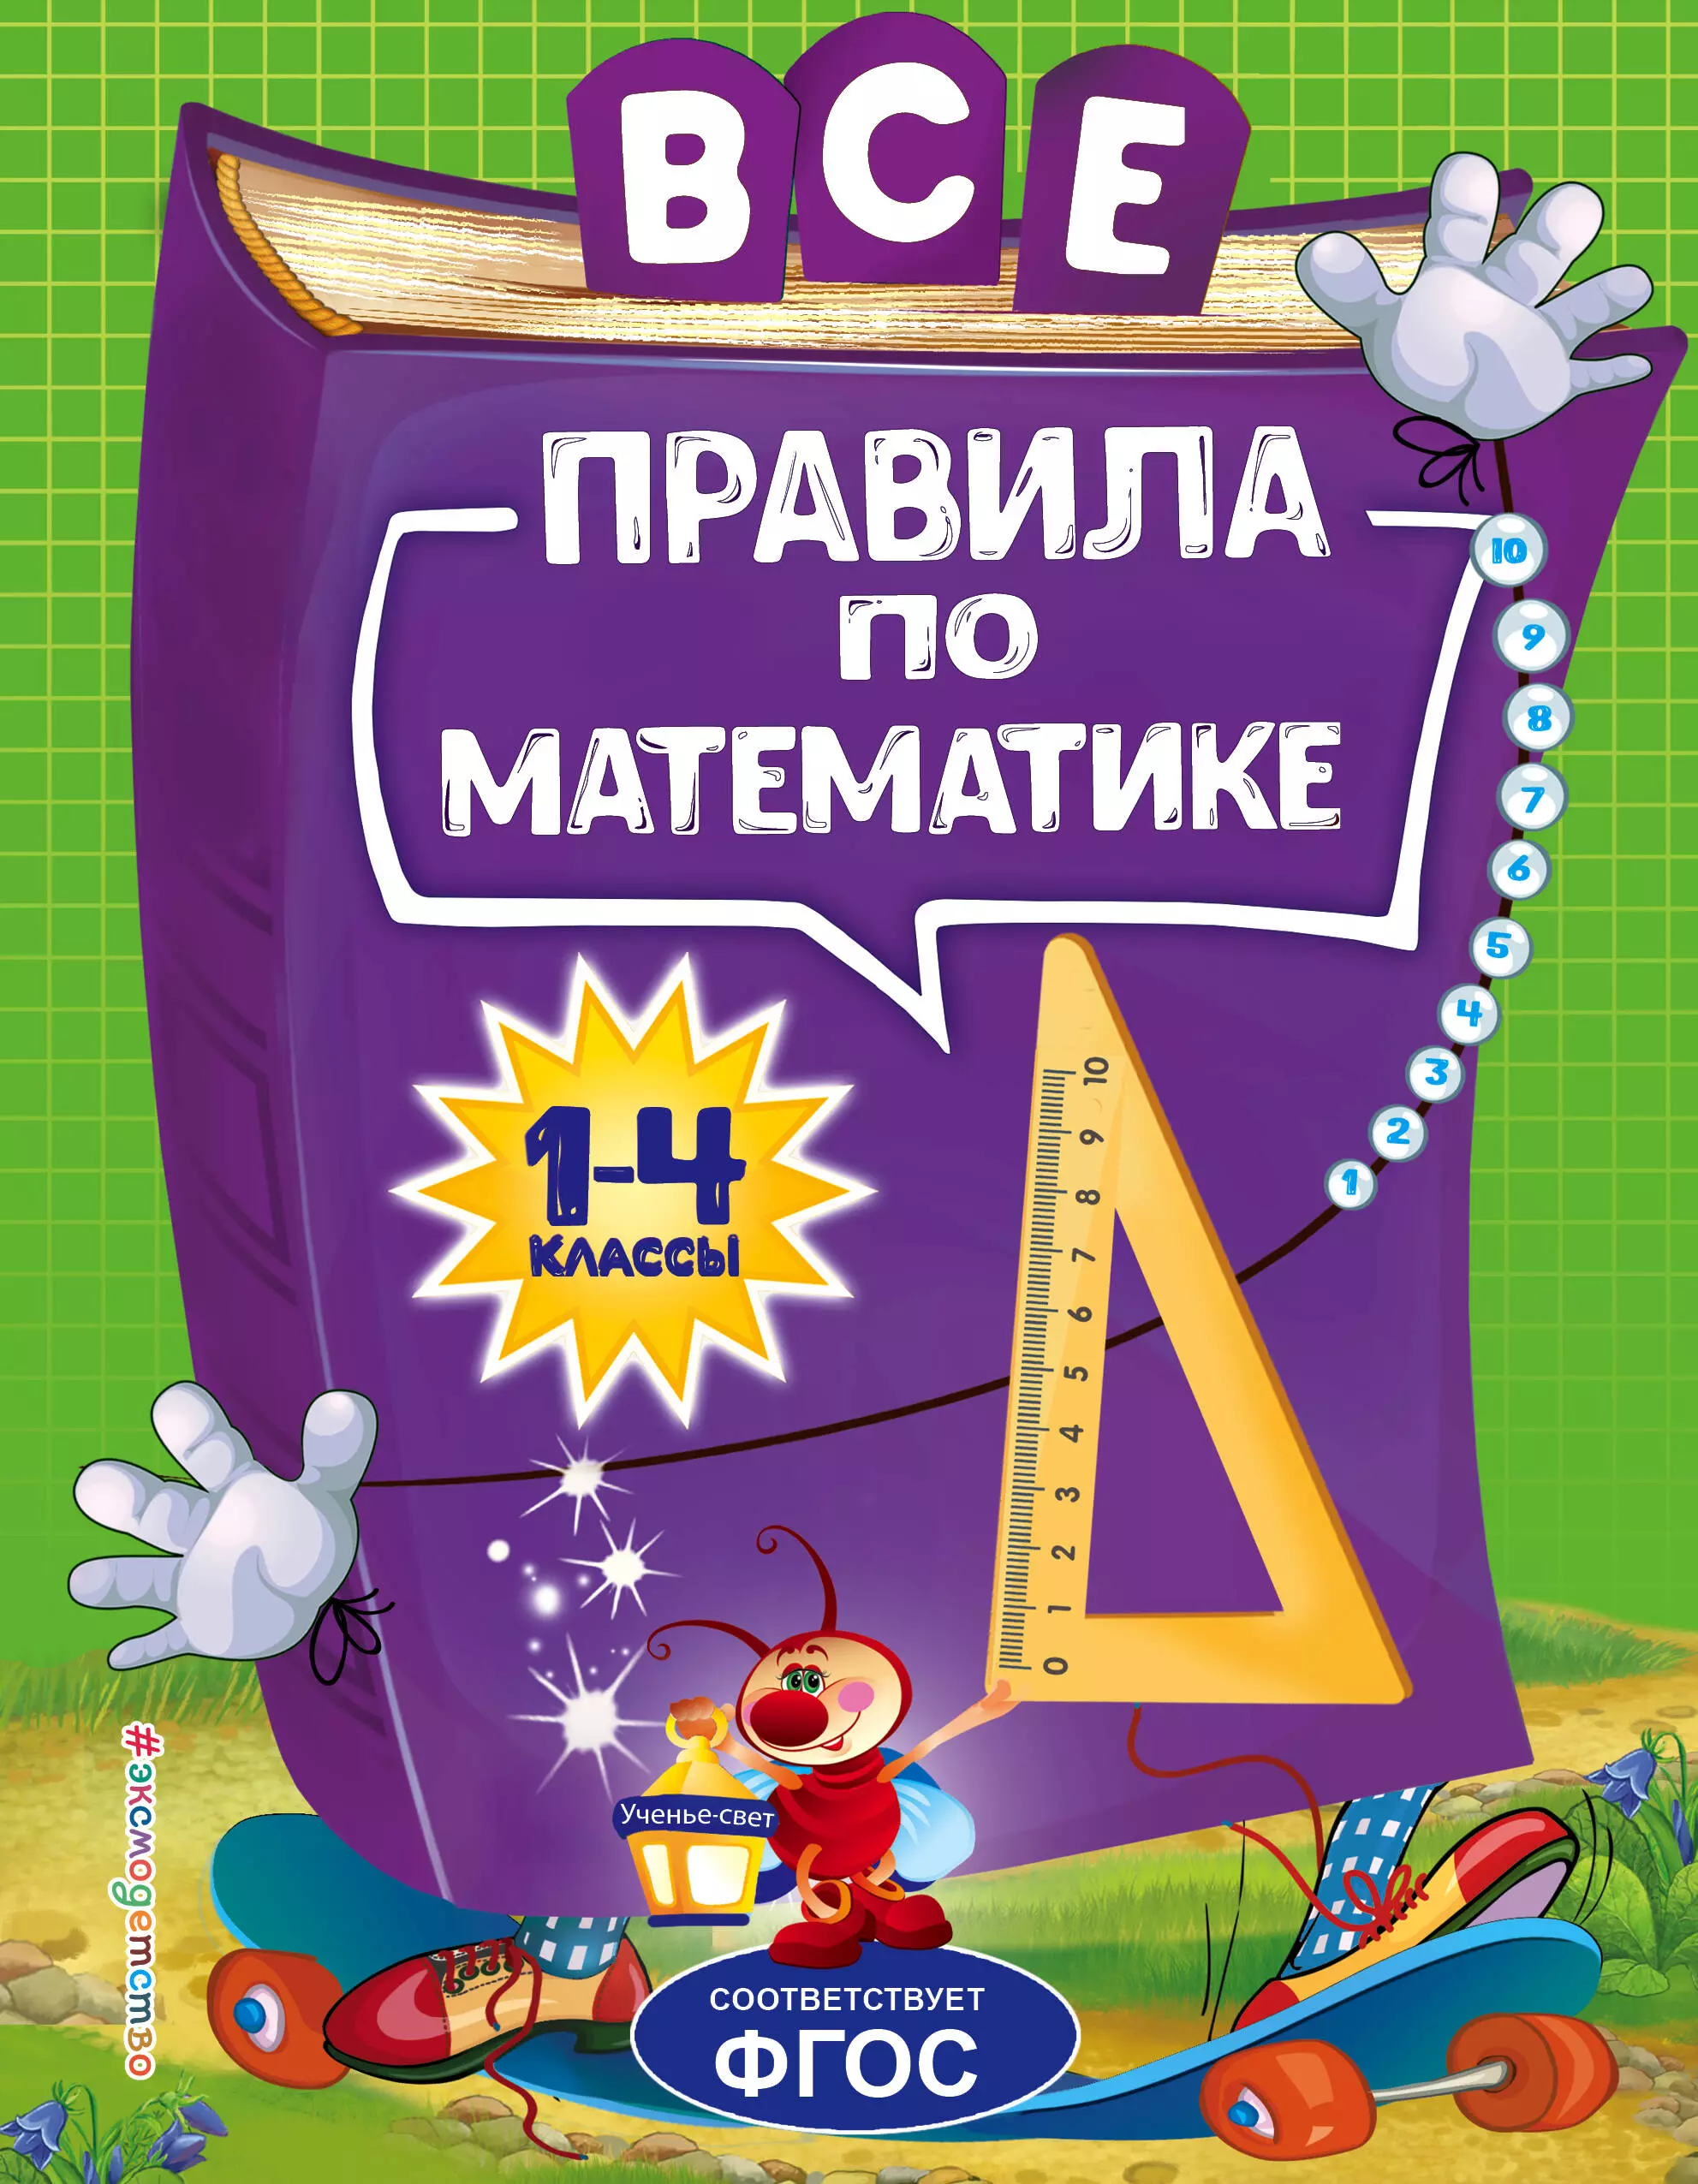 Горохова Анна Михайловна - Все правила по математике. Для начальной школы (1-4 классы)